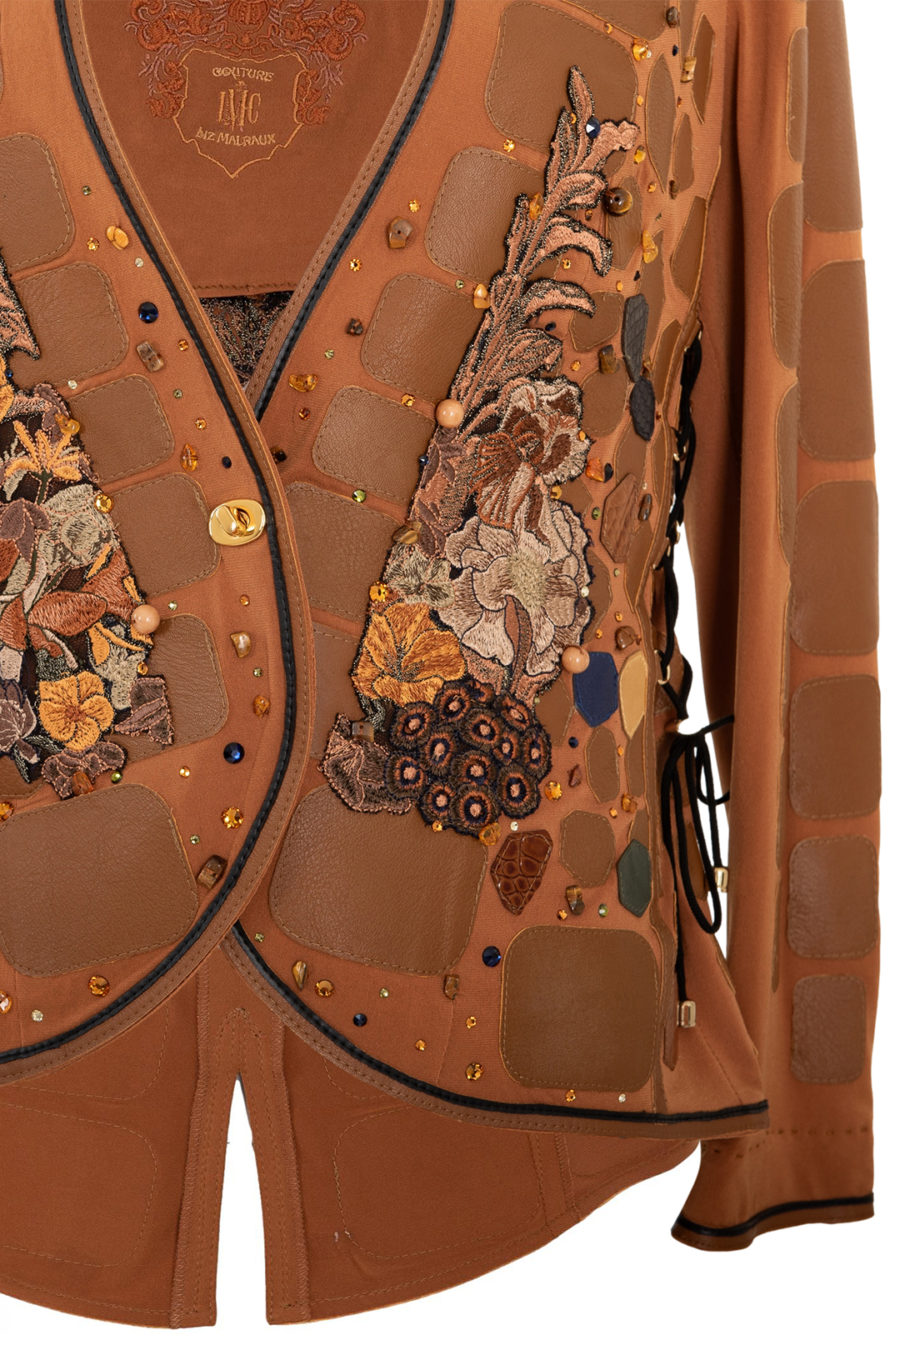 Jacke mit "Autumn Colours" - embroidery und 310 handapplizierten Naturedelsteinen und Kristallen, Lederpatches , stitches: 424.200